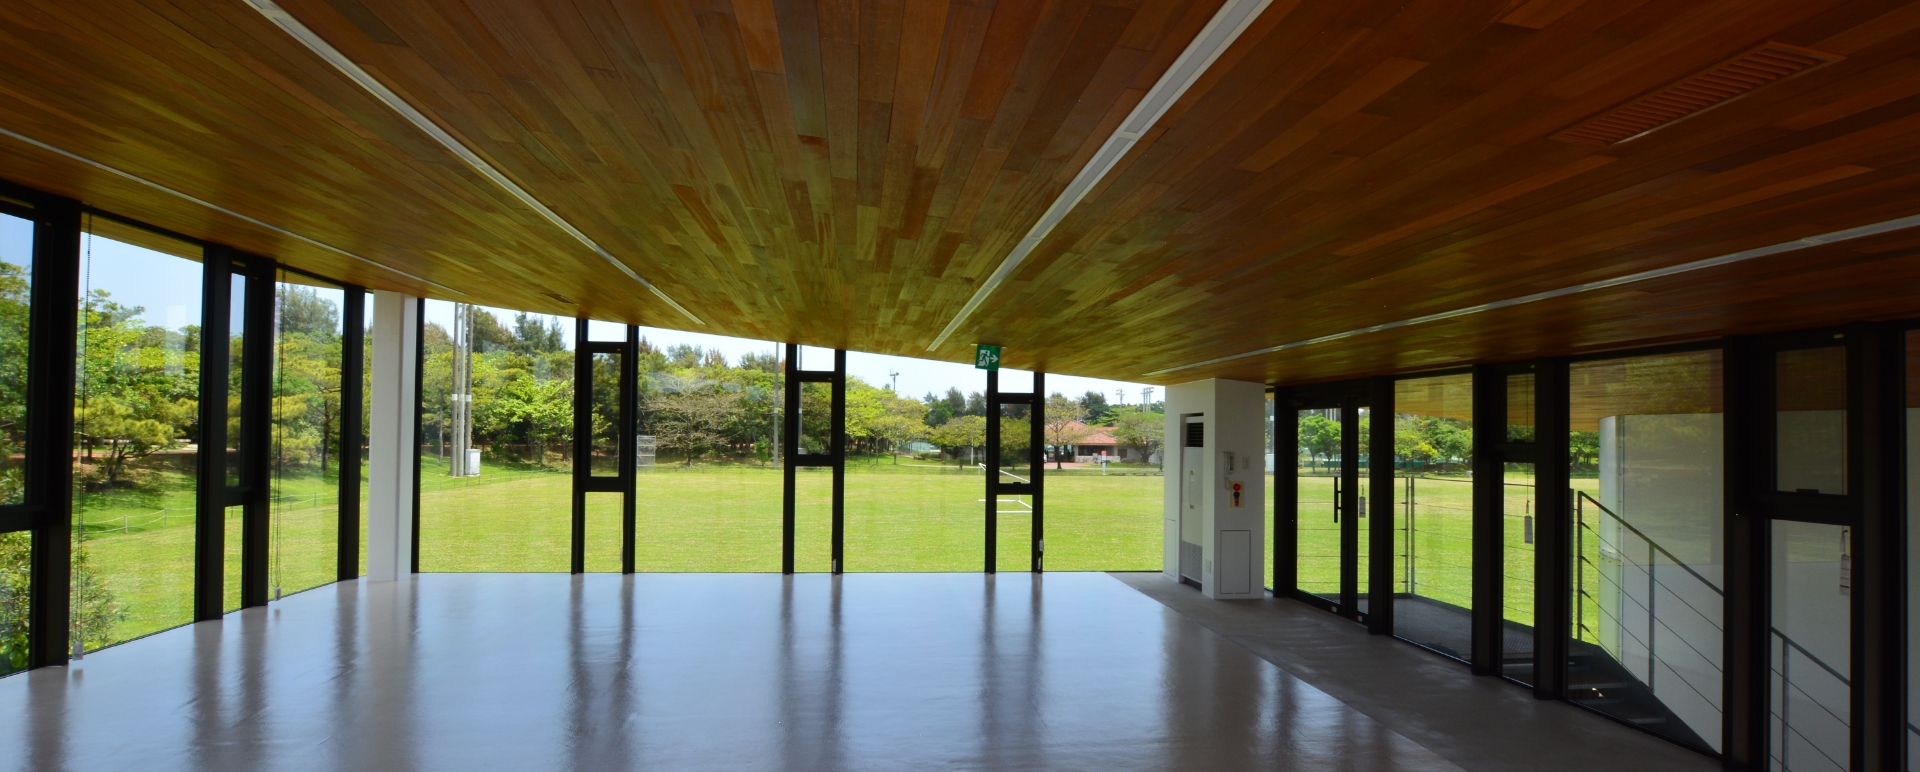 建築設計事例 沖縄県総合運動公園 サッカー・ラグビー場 蹴球場 クラブハウス 多目的室